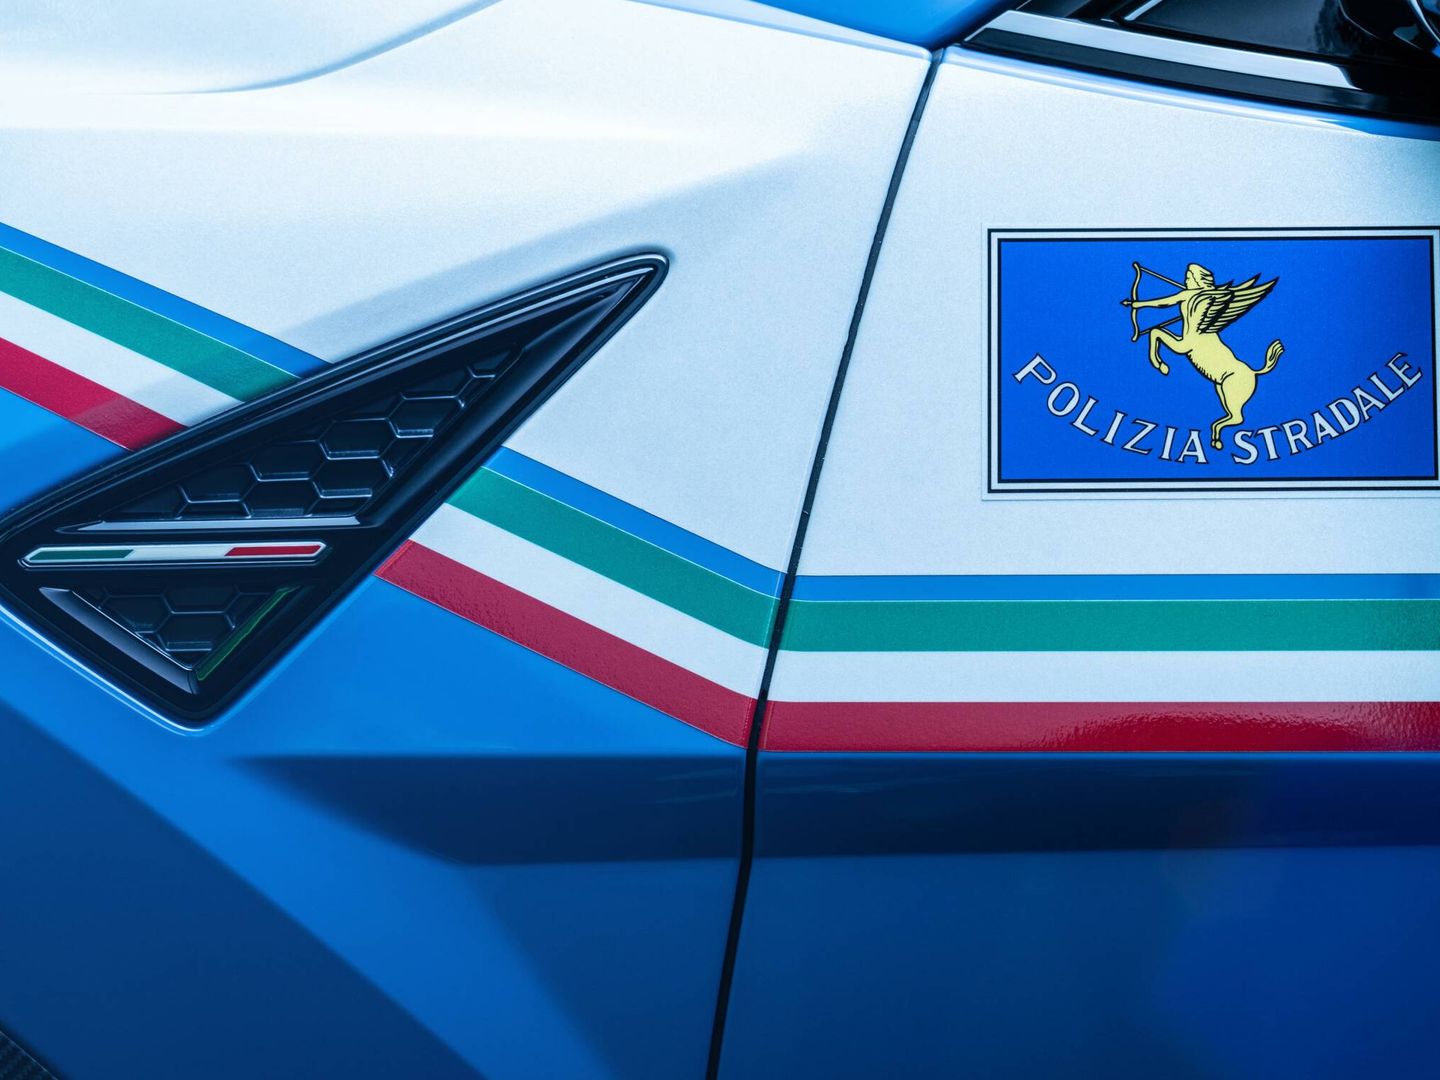 Polizia Stradale es el cuerpo de la policía estatal italiana dedicado a patrullar las carreteras.